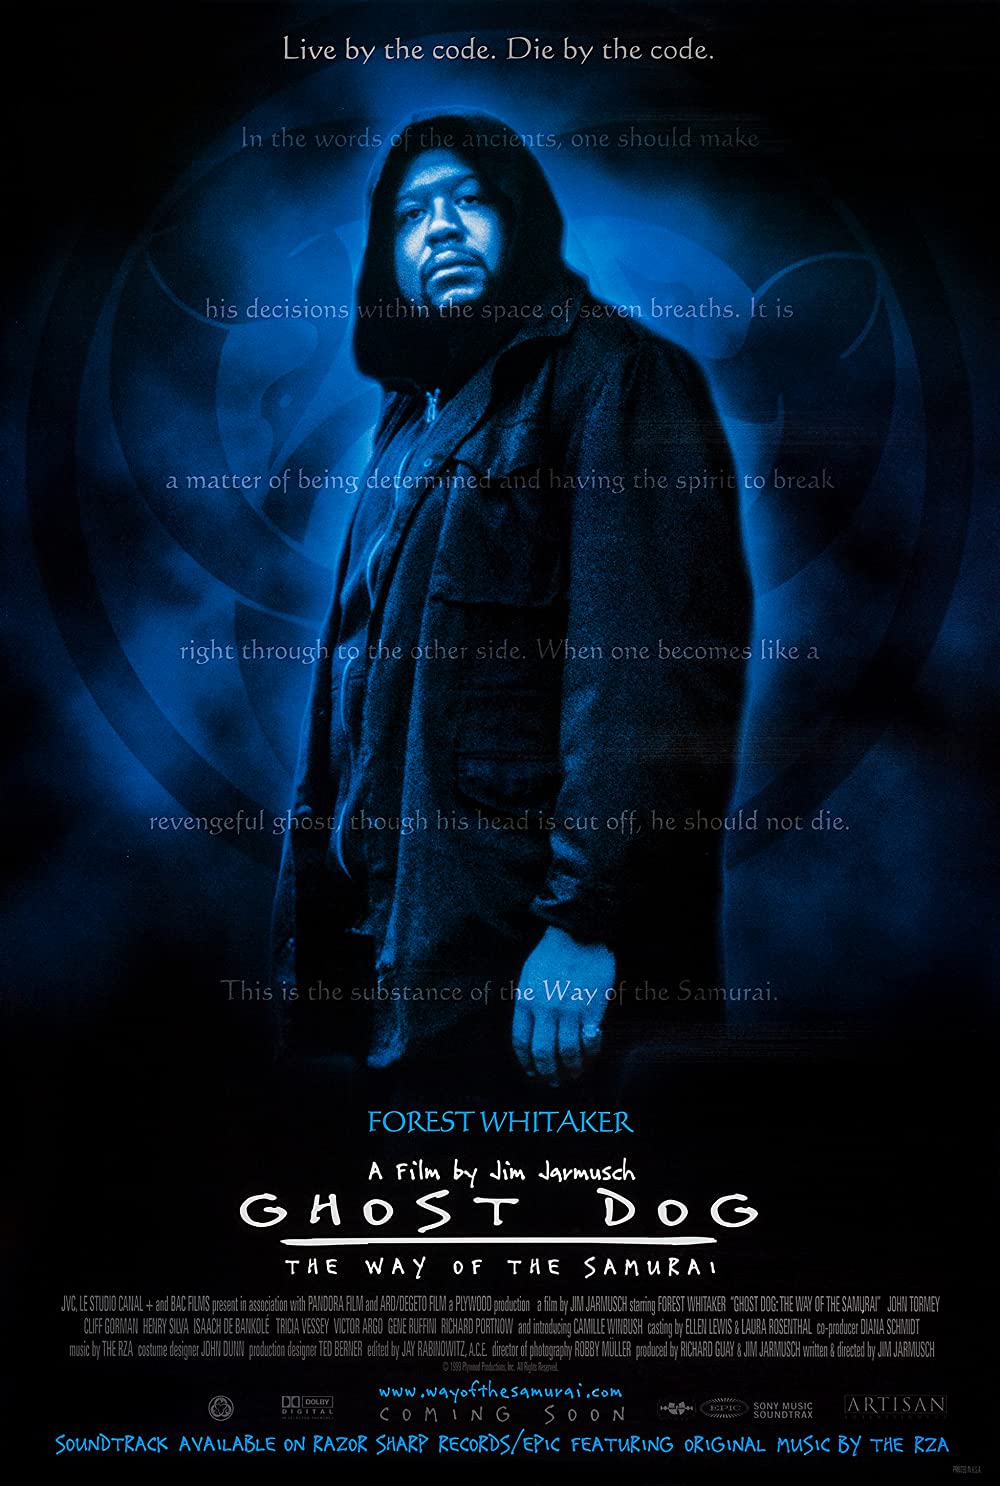 Filmbeschreibung zu Ghost Dog